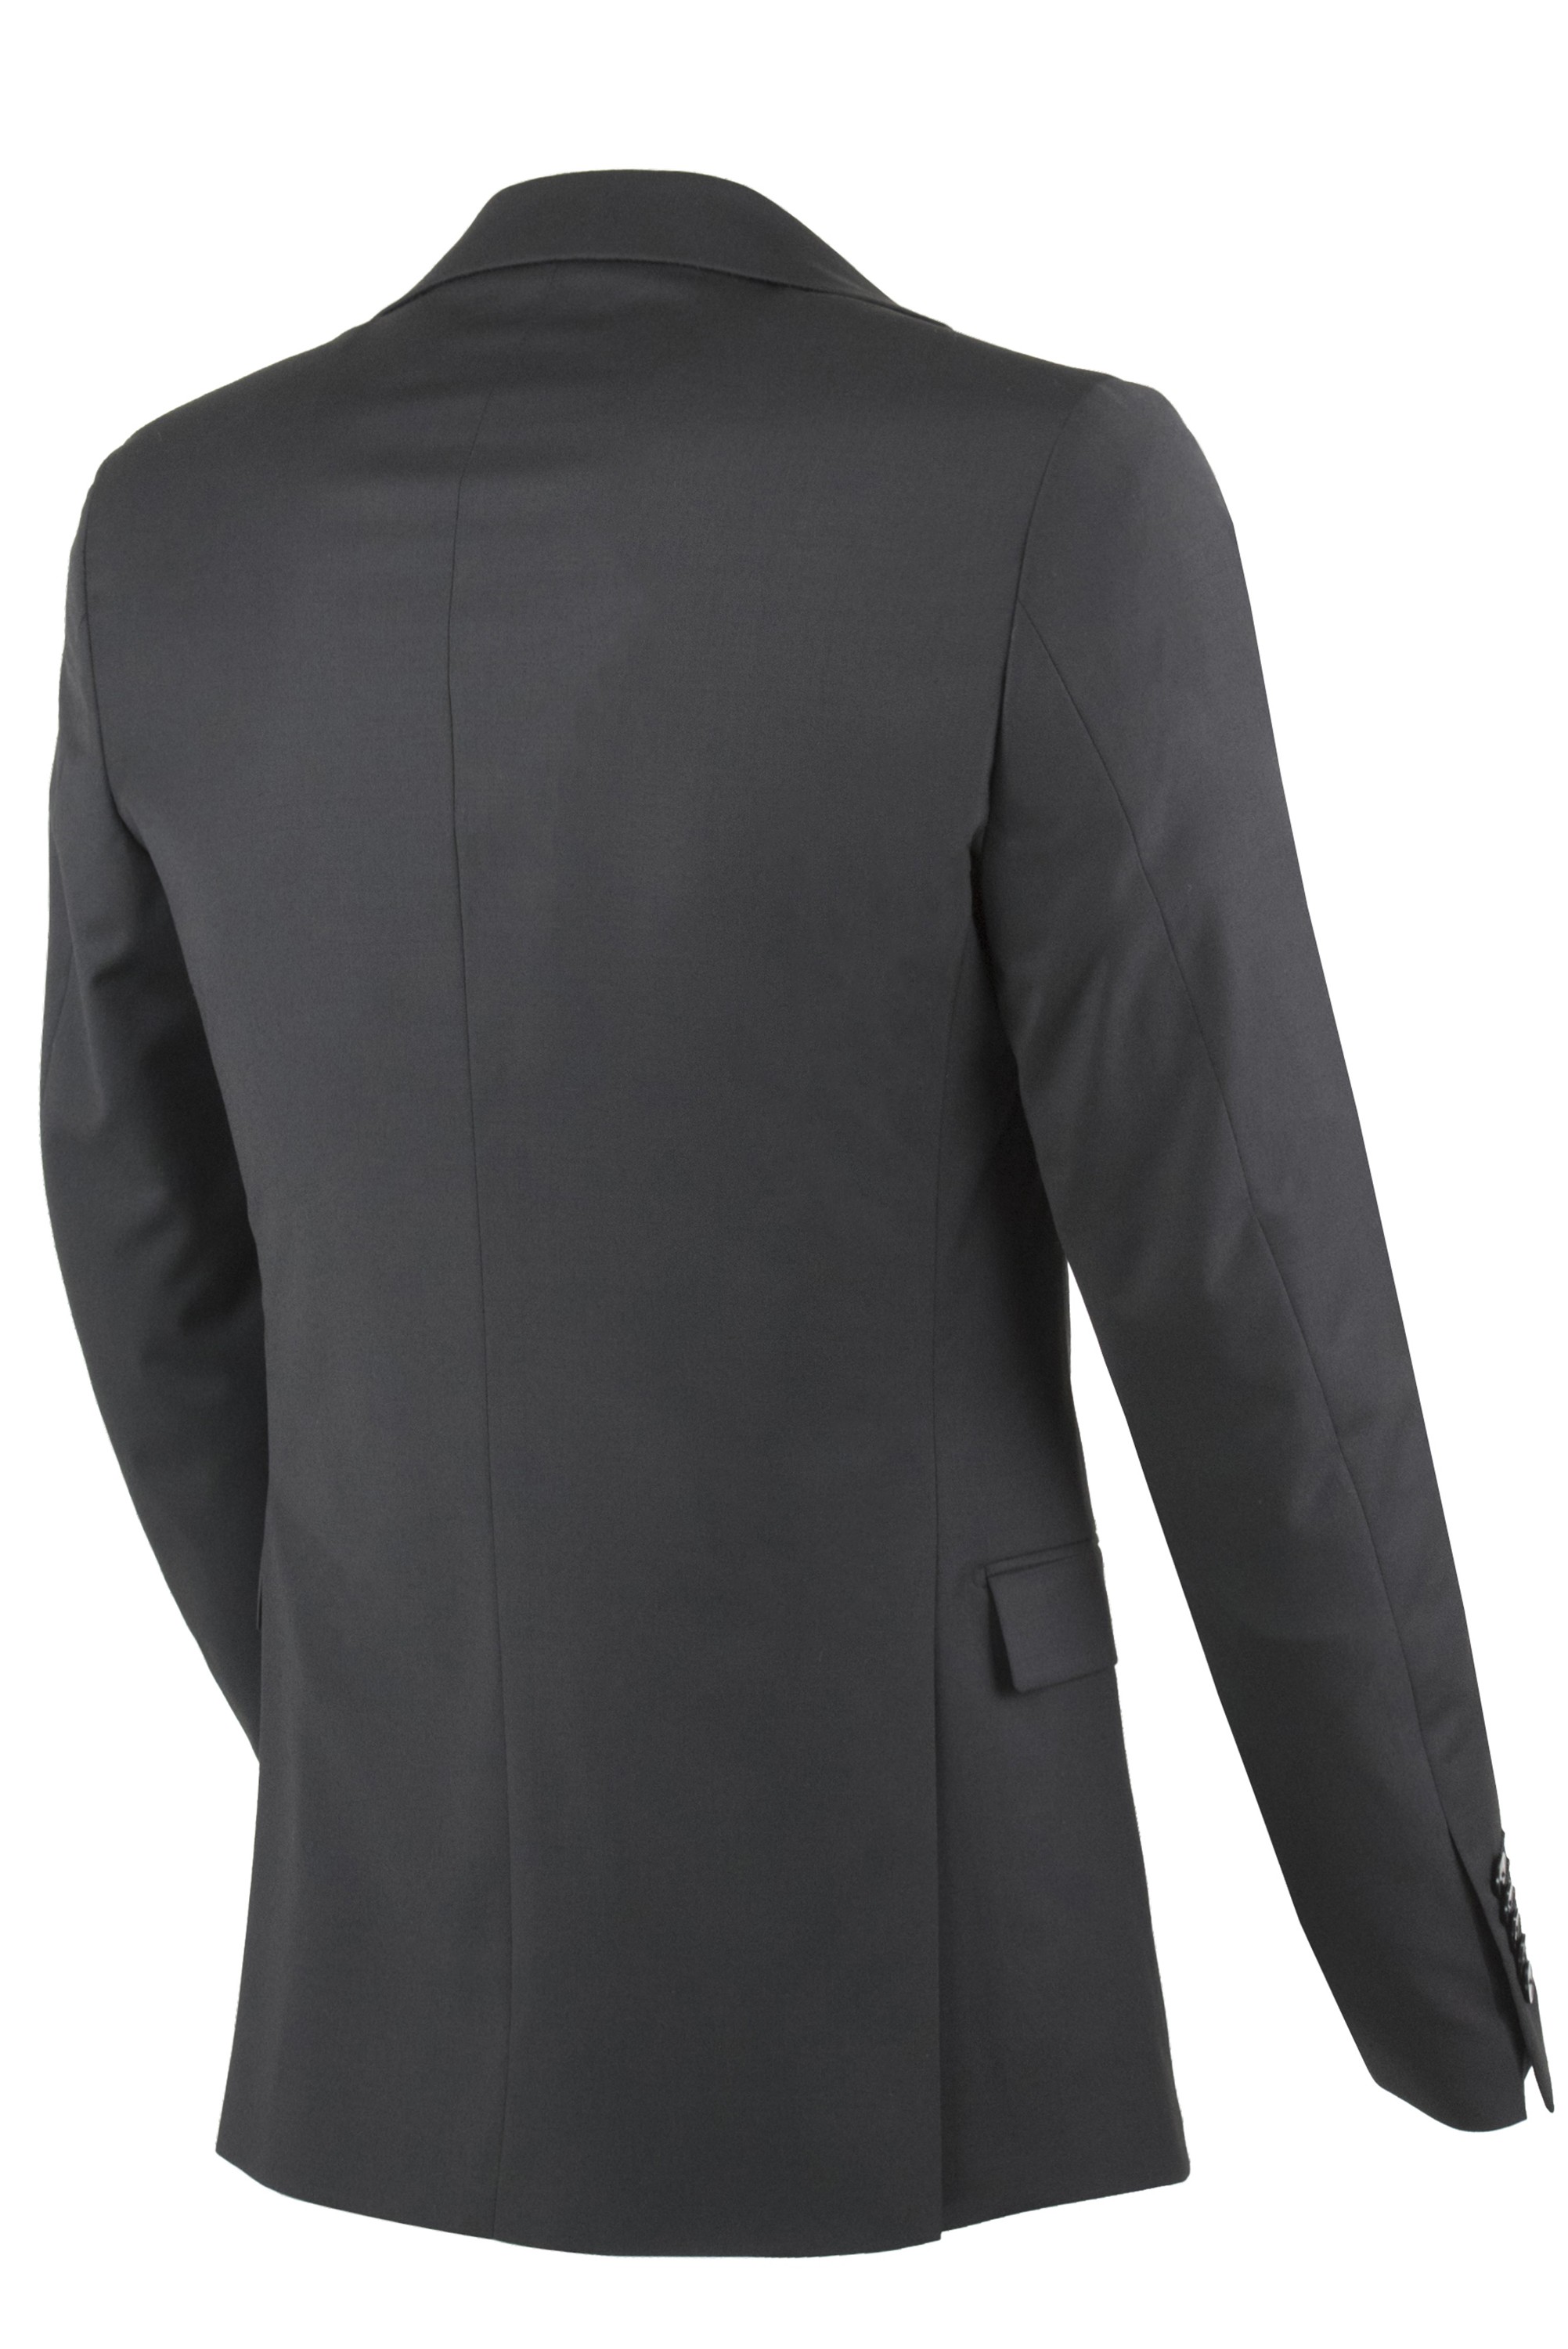 Paoloni Men's Suit 2611A448 191008 99